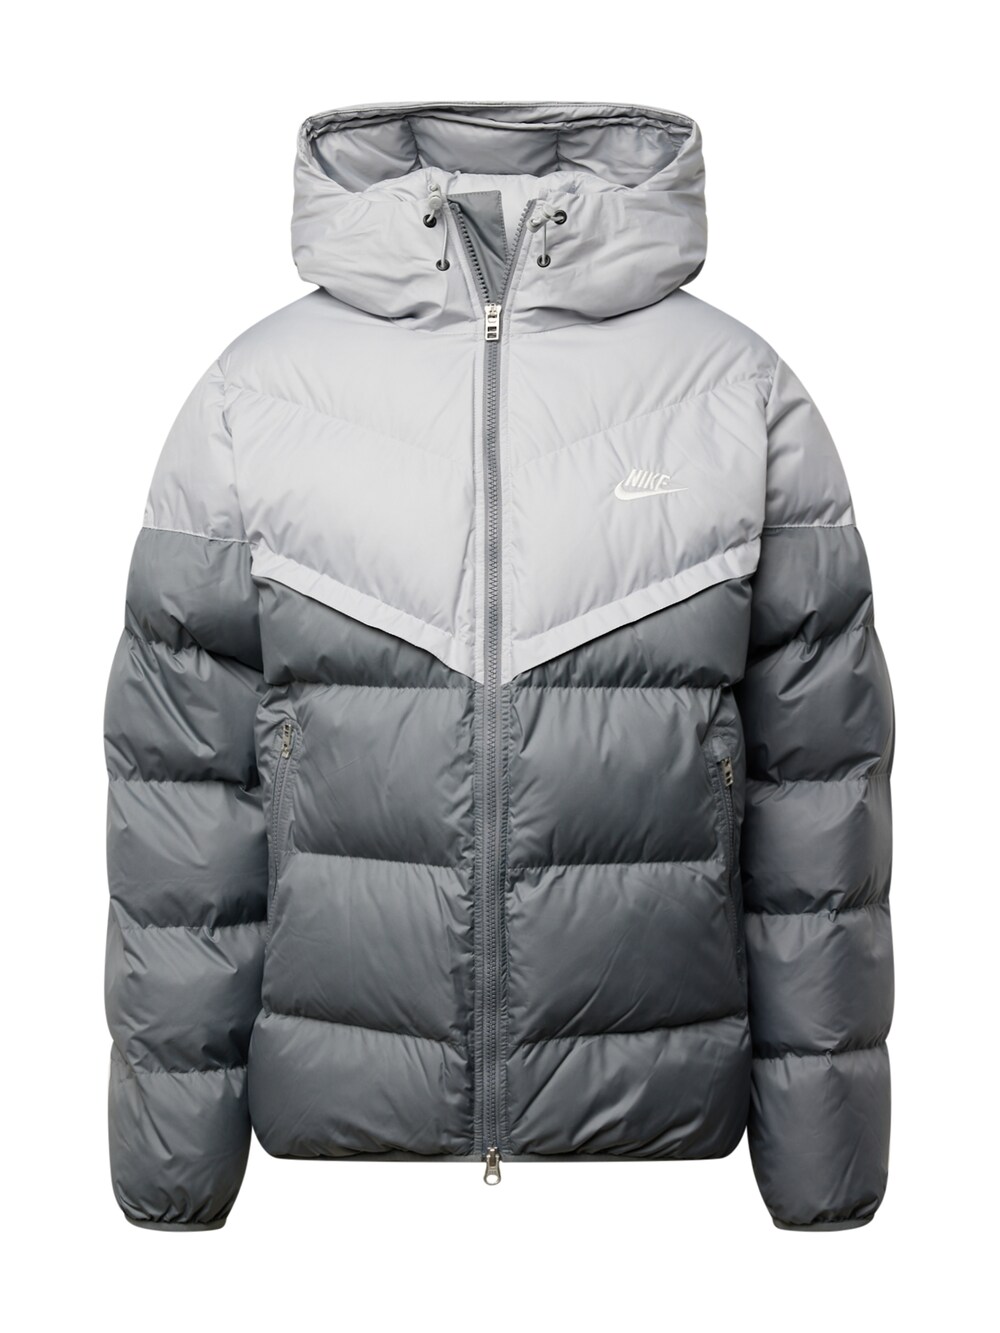 Зимняя куртка Nike Sportswear, серый/светло-серый